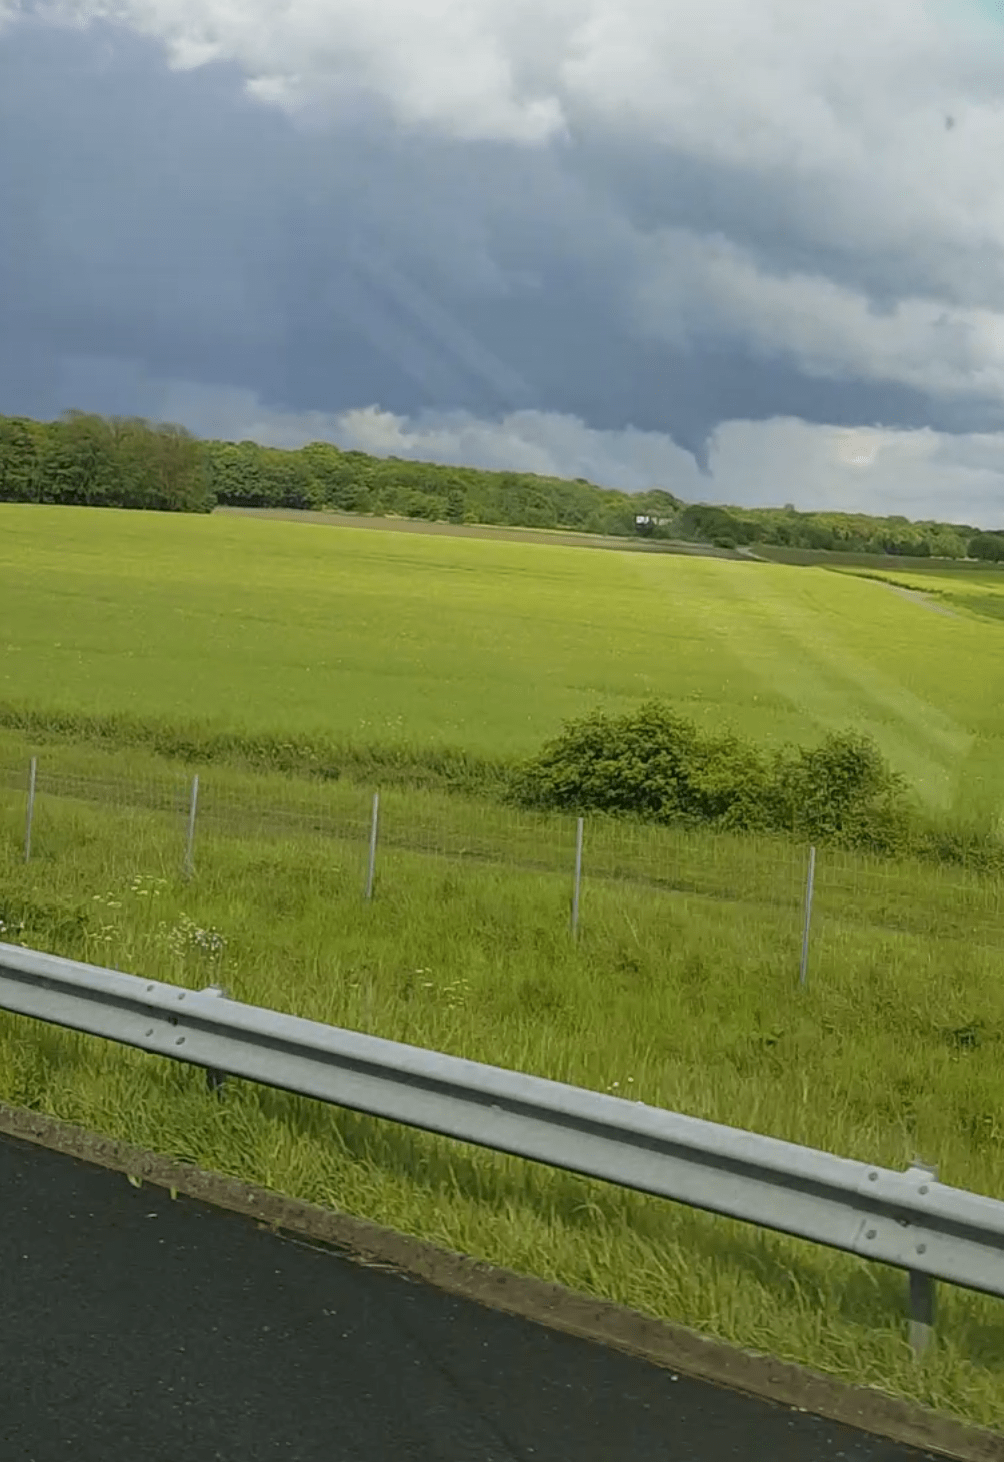 Photo prise près de Senlis proche de l'autoroute A1: orages avec un tuba bien développé. - 12/05/2017 17:00 - Jerome Mahoudaux